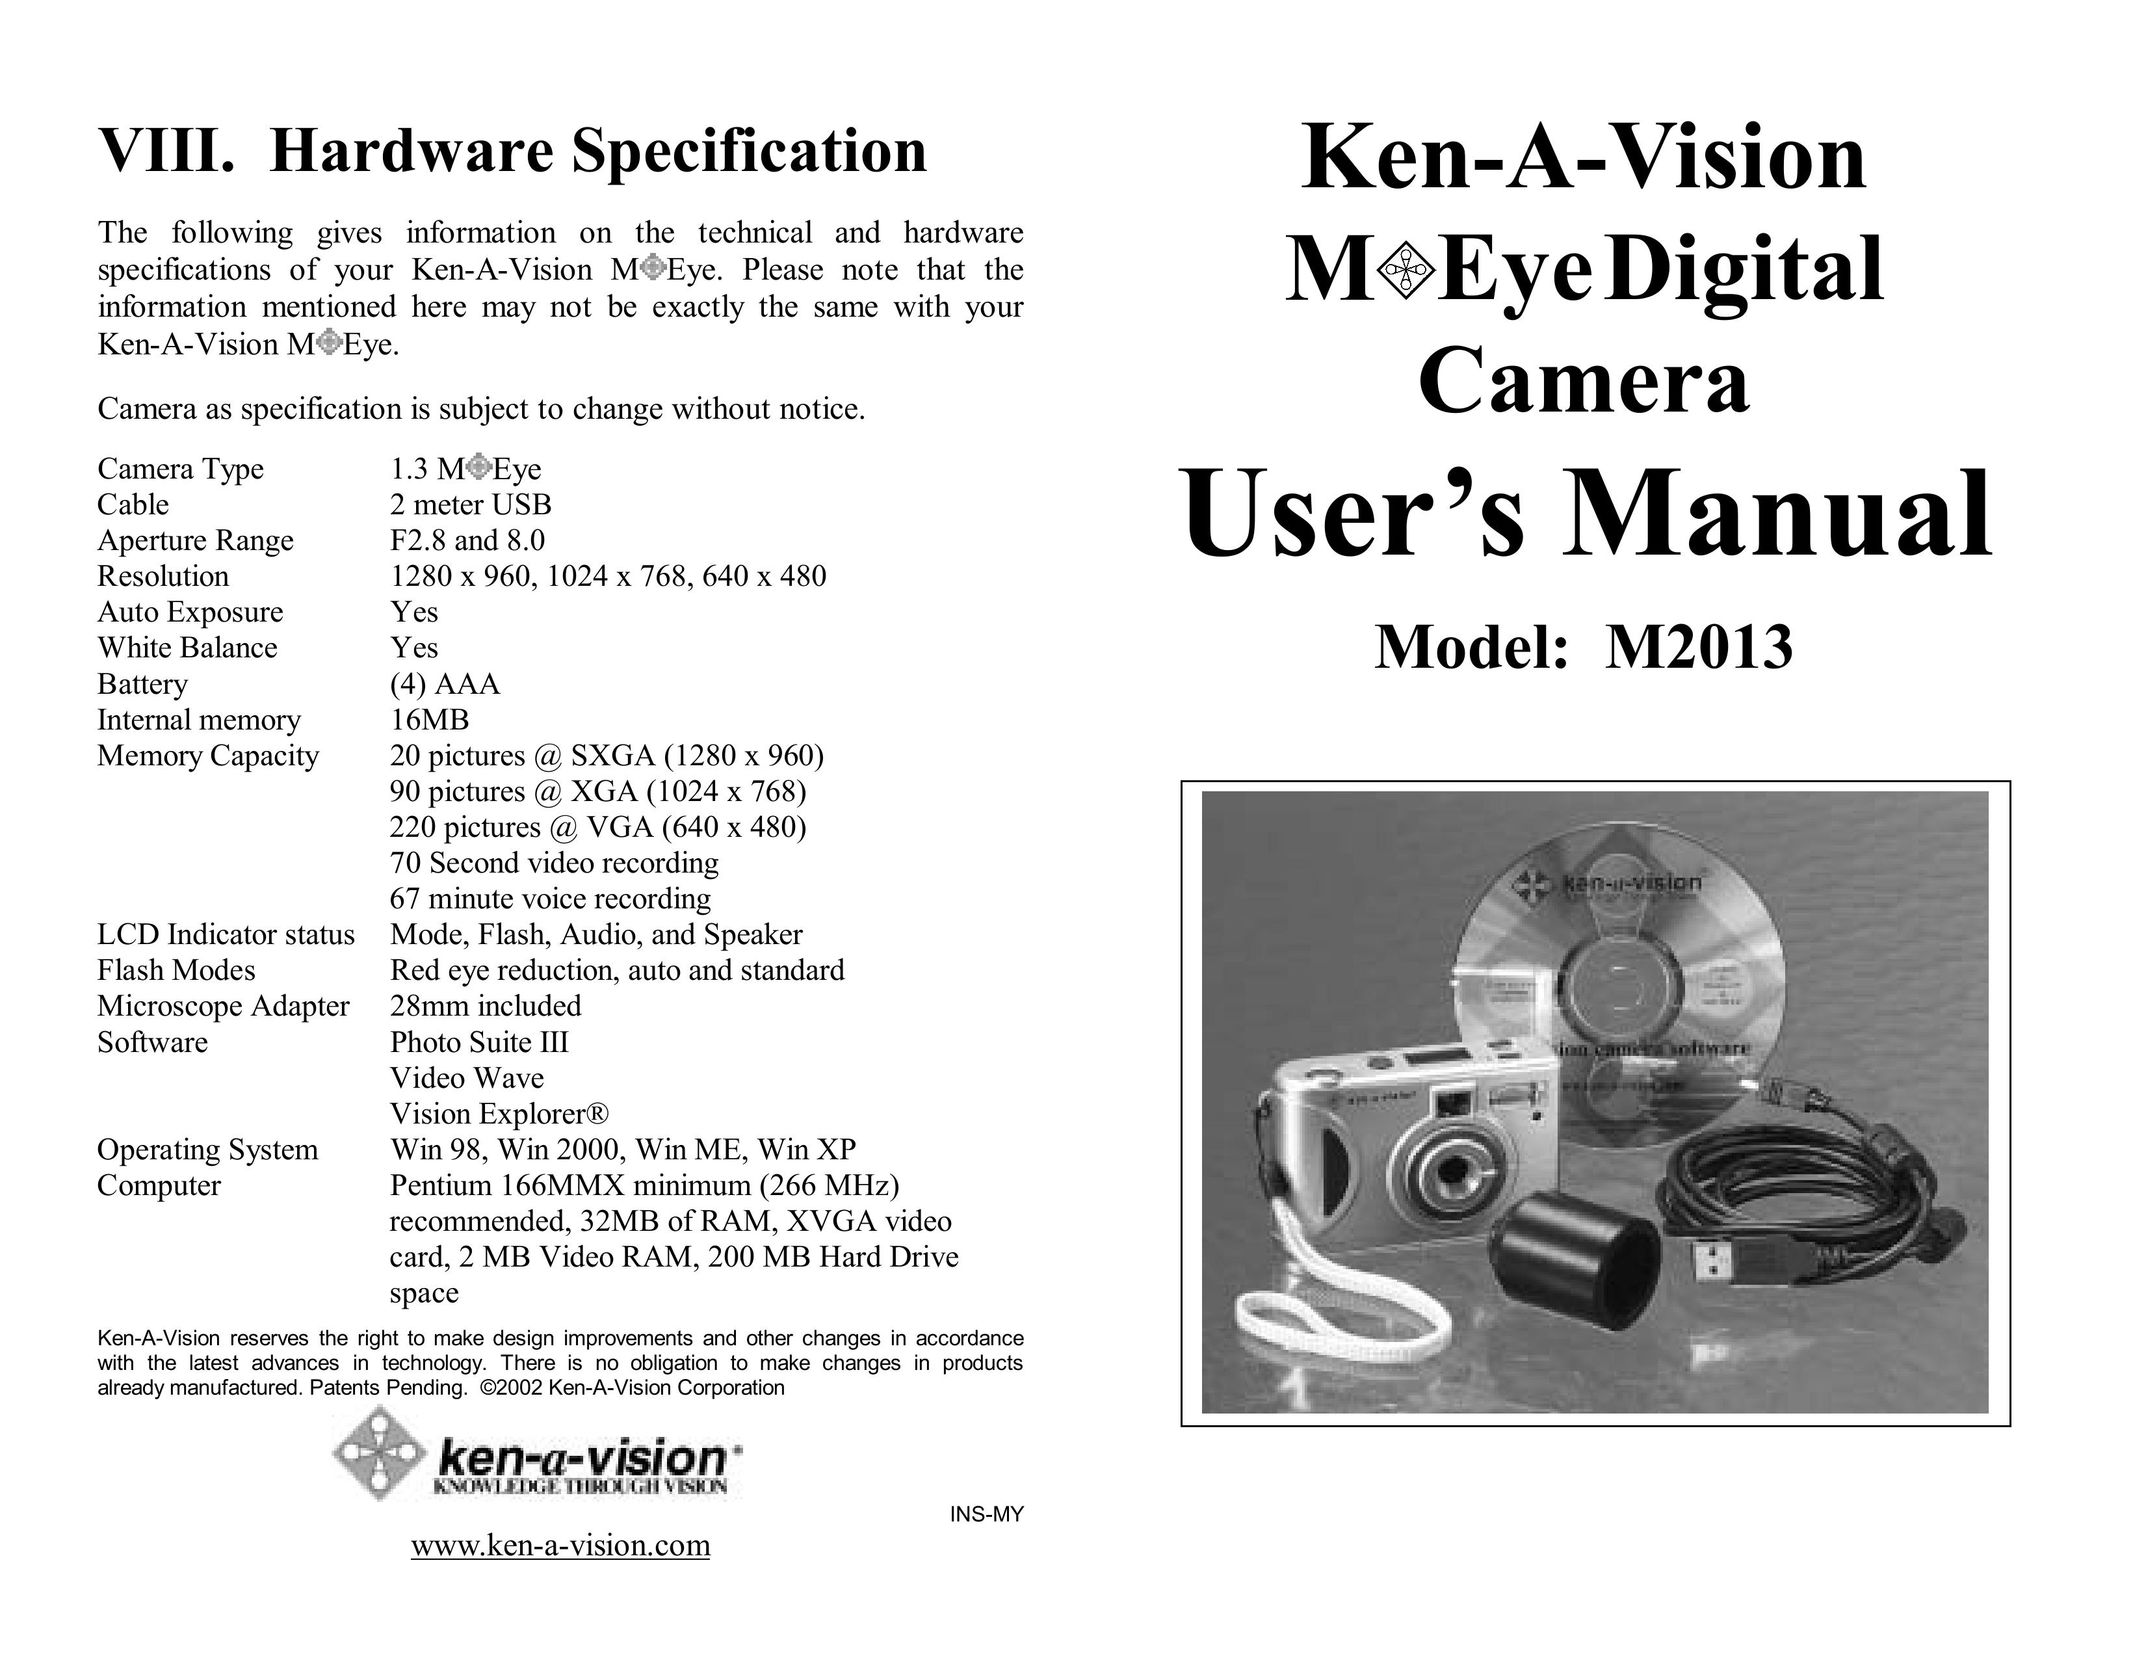 Ken-A-Vision m2013 Webcam User Manual